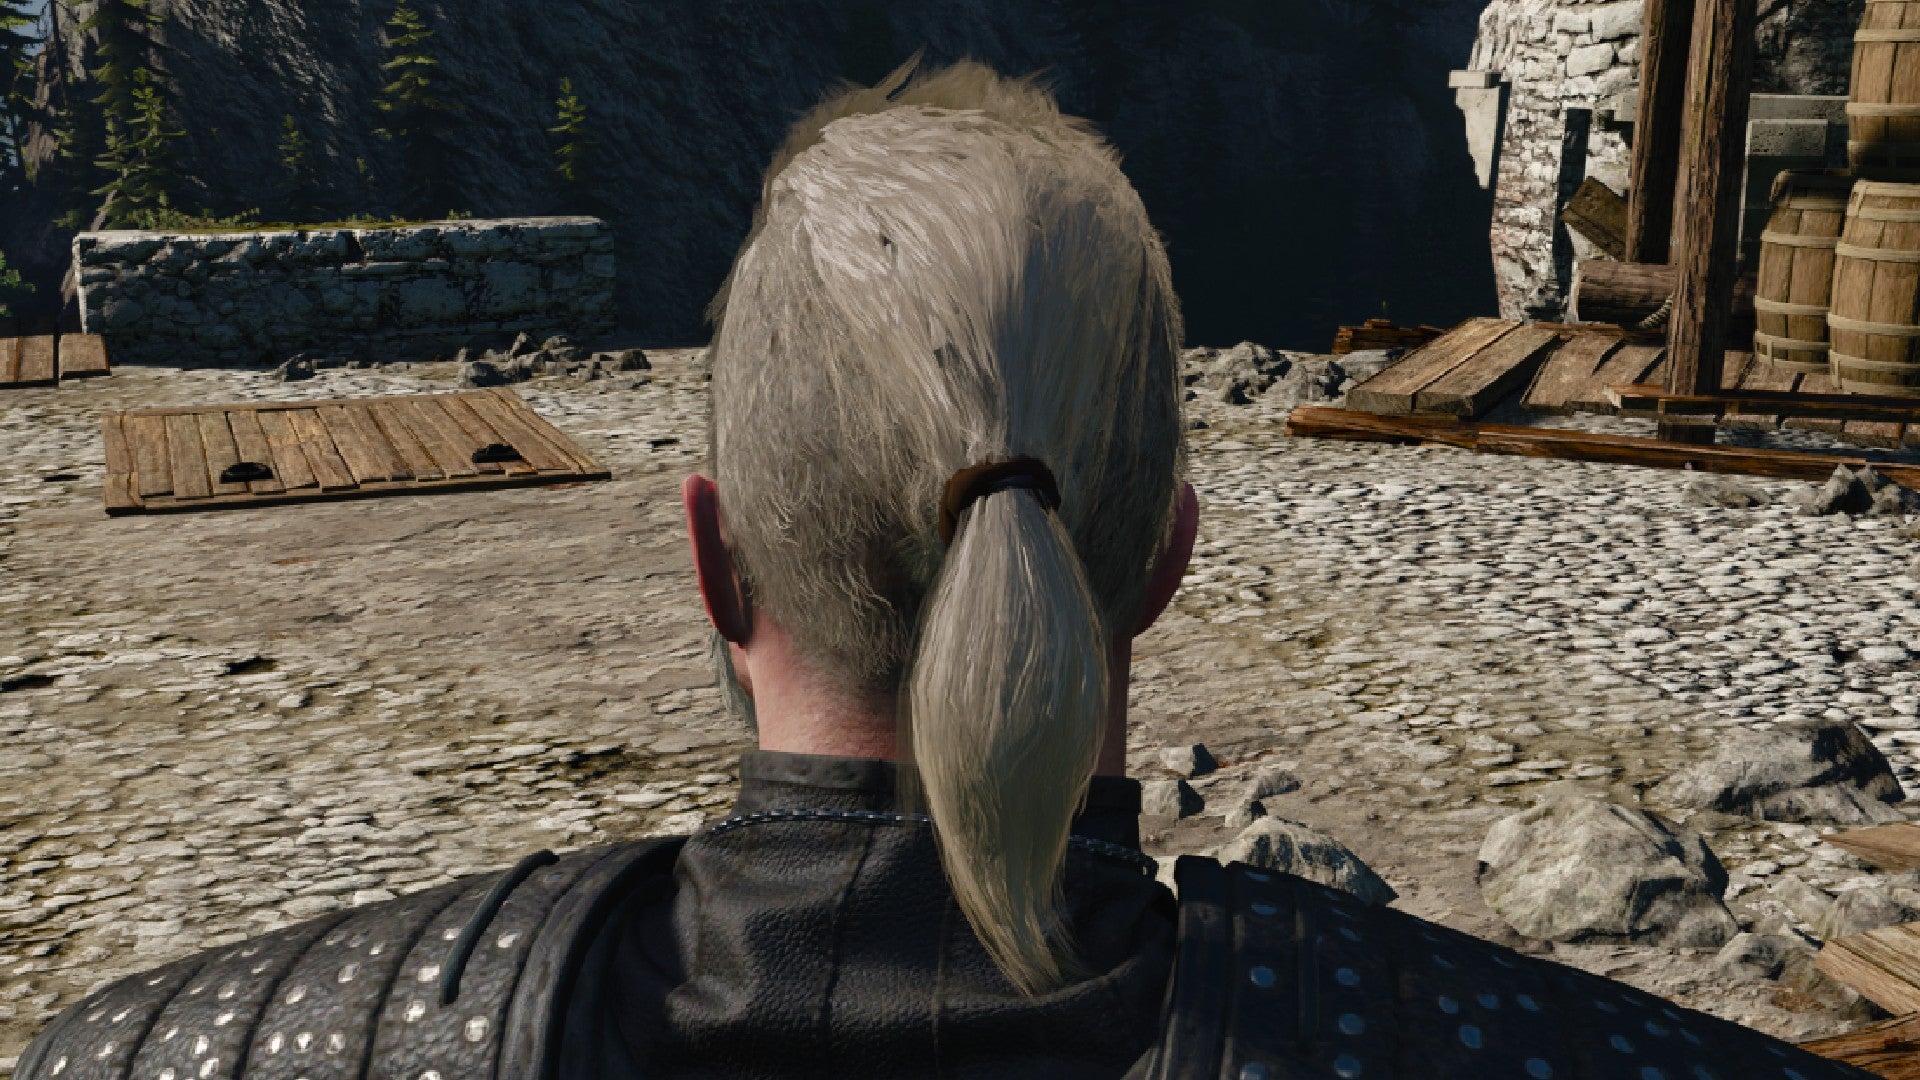 Captura de pantalla de Witcher 3 que muestra el corte de pelo mohawk y cola de caballo de Geralt desde atrás.